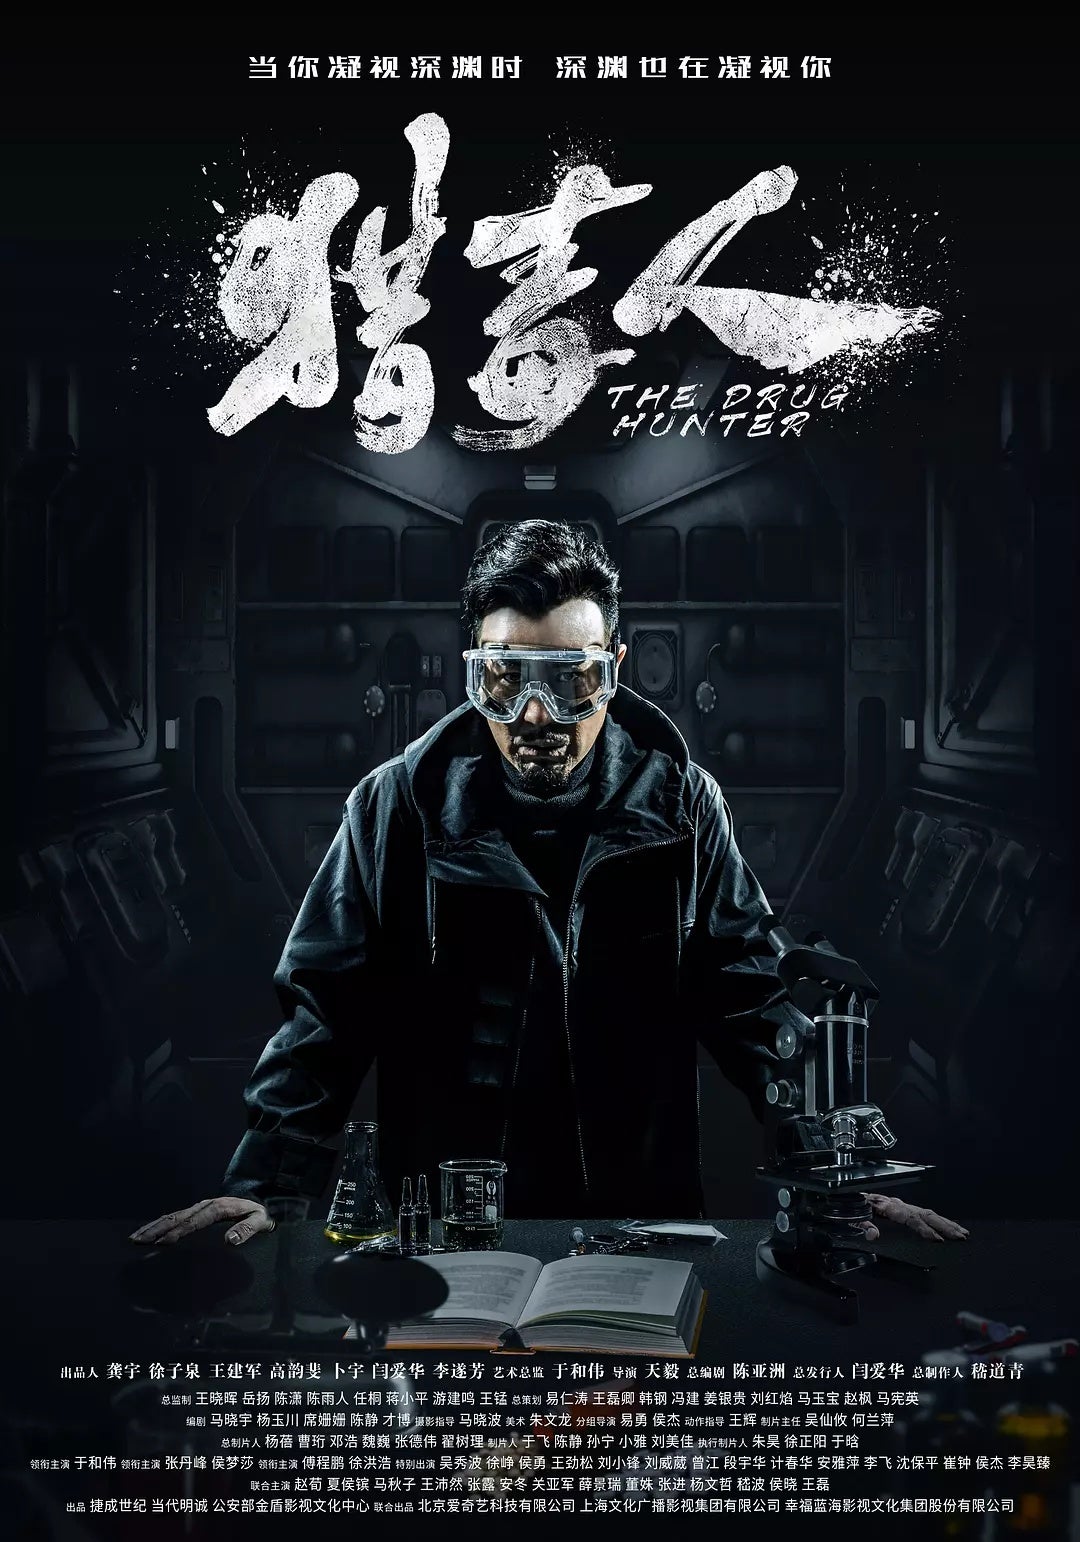 TV ratings for The Drug Hunter (猎毒人) in Japan. Jiangsu Television TV series